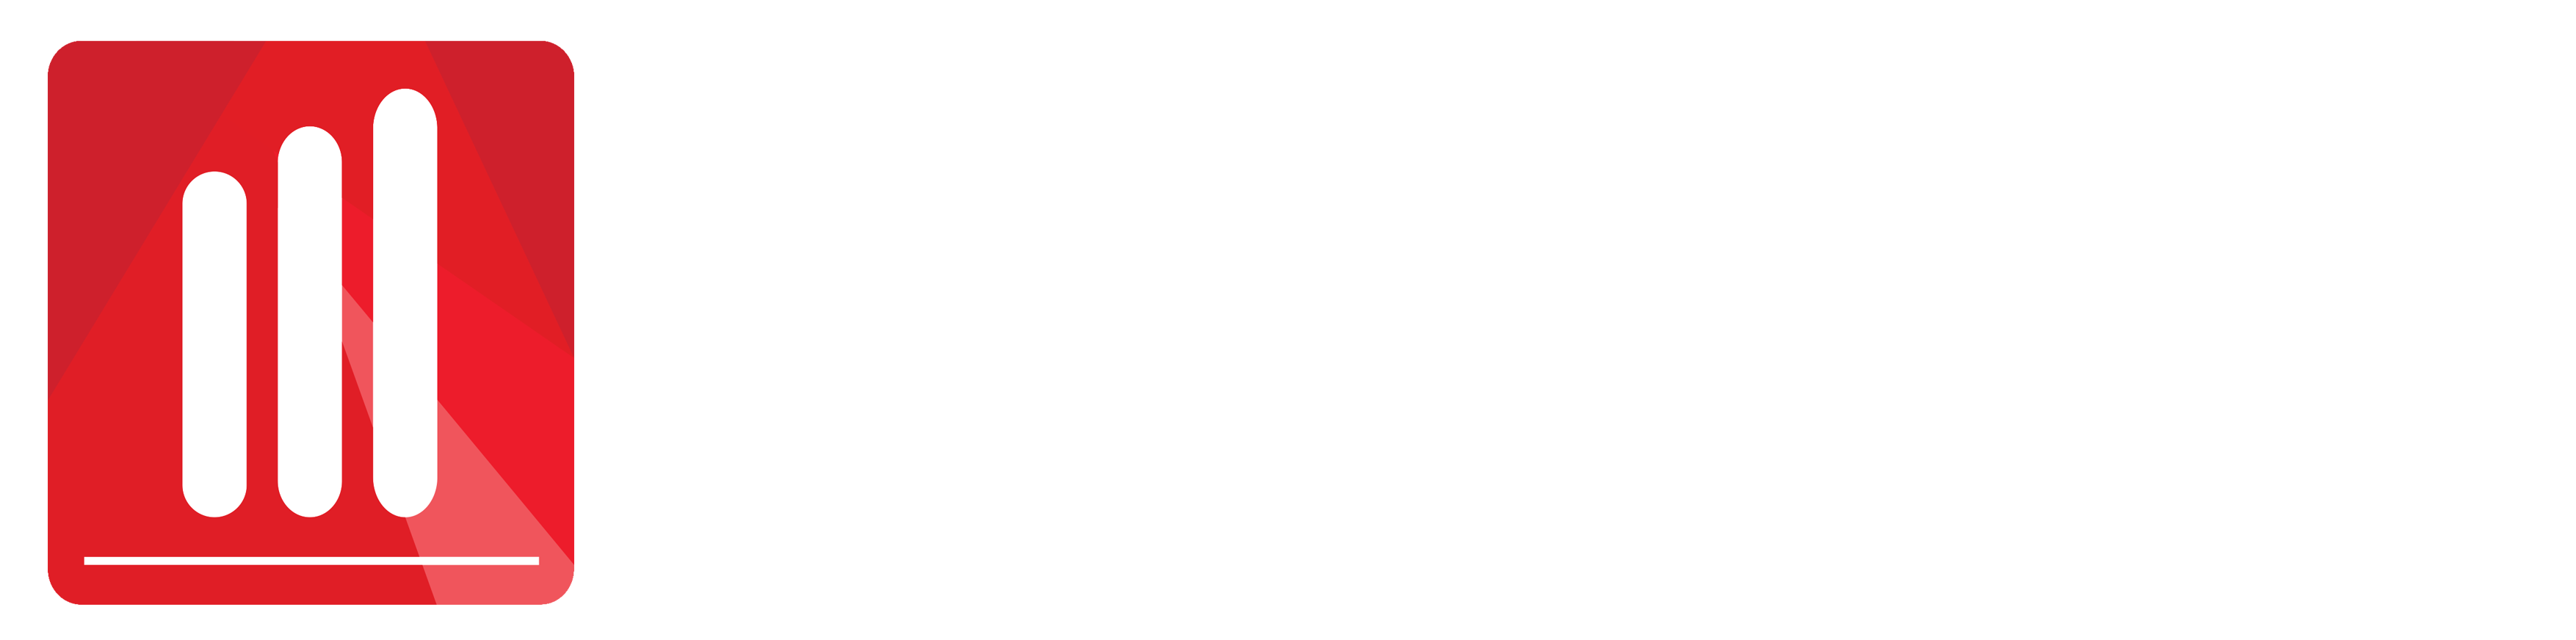 The Tukang Marketing